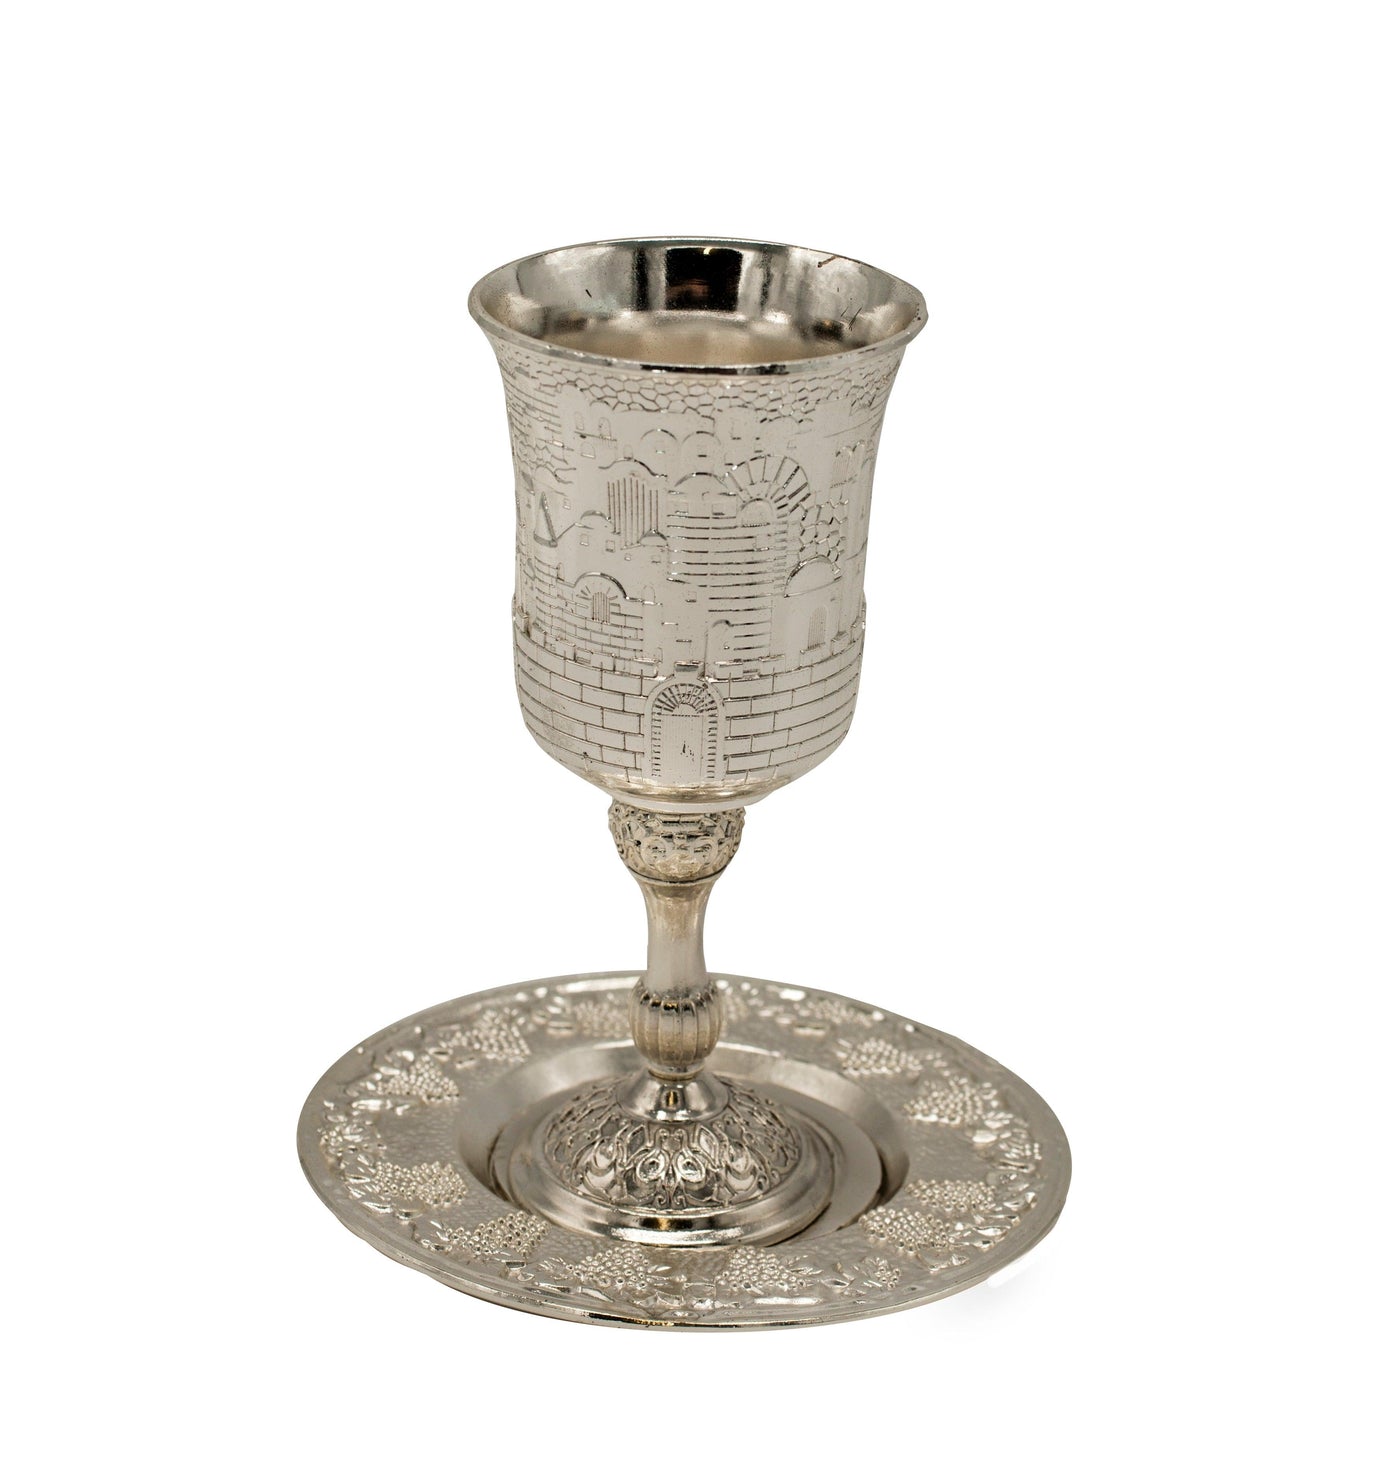 Shabbat Kiddush Metal Cup & Plate Silver Plated Jerusalem Design - Spring Nahal